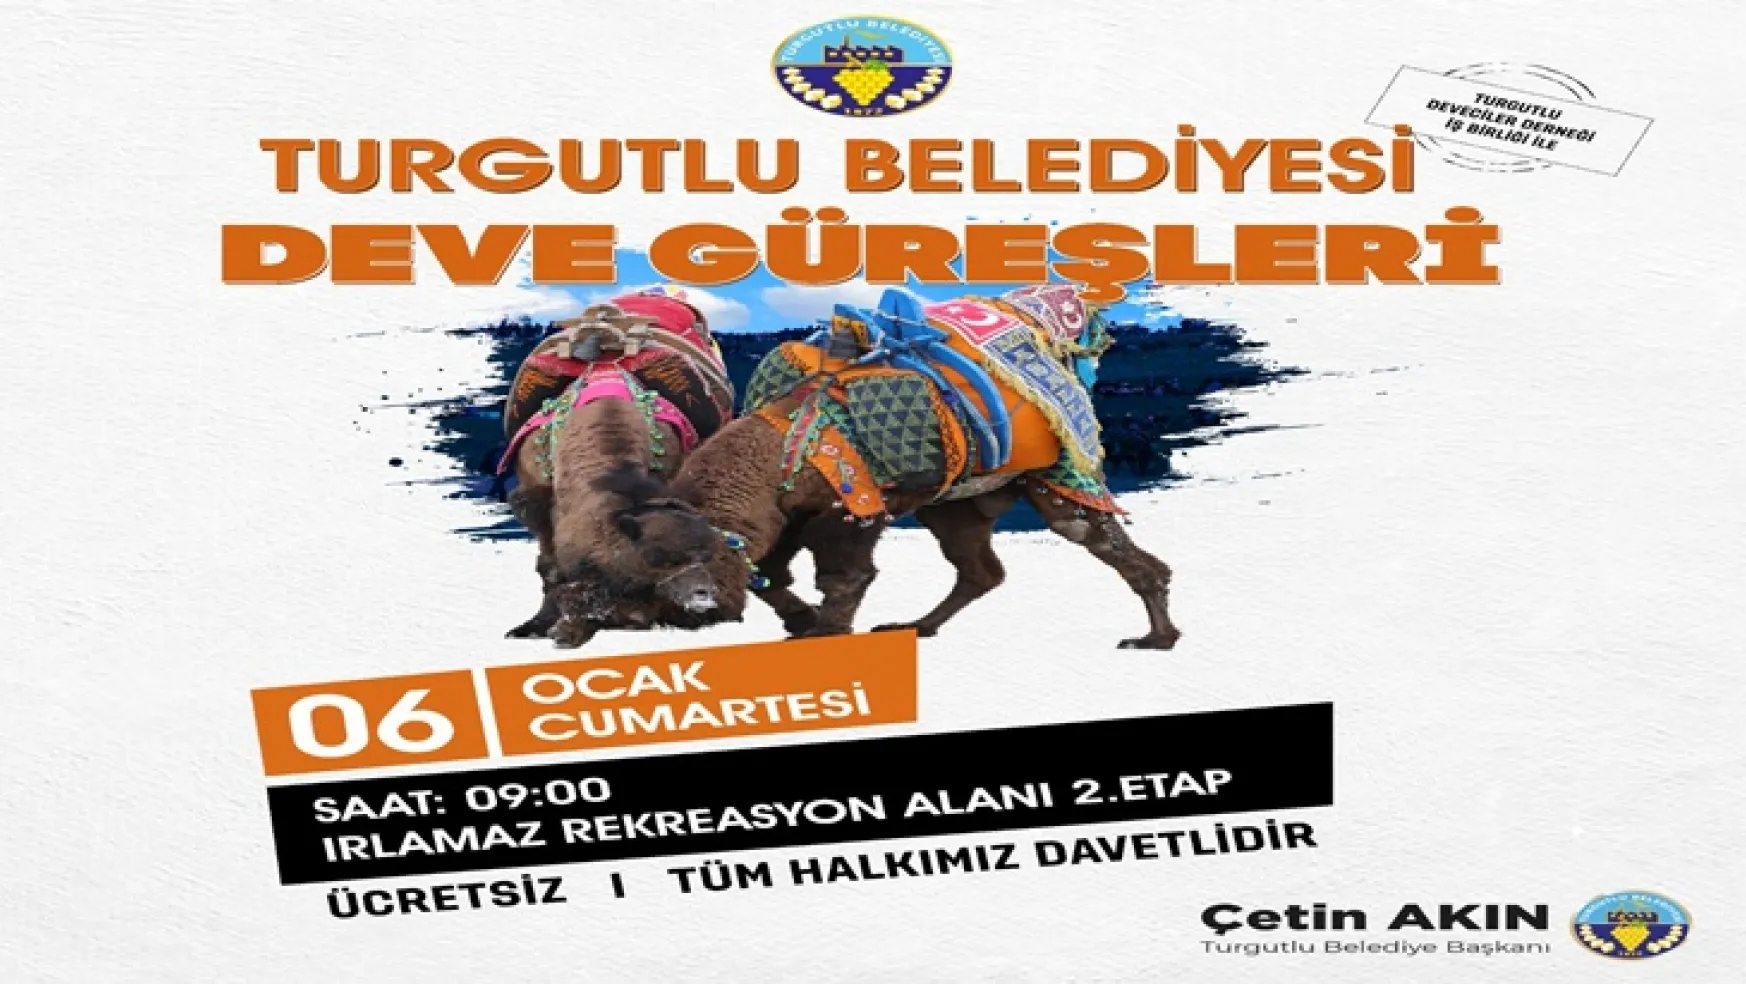 Turgutlu Belediyesi Geleneksel Deve Güreşleri 6 Ocak Cumartesi Yapılacak